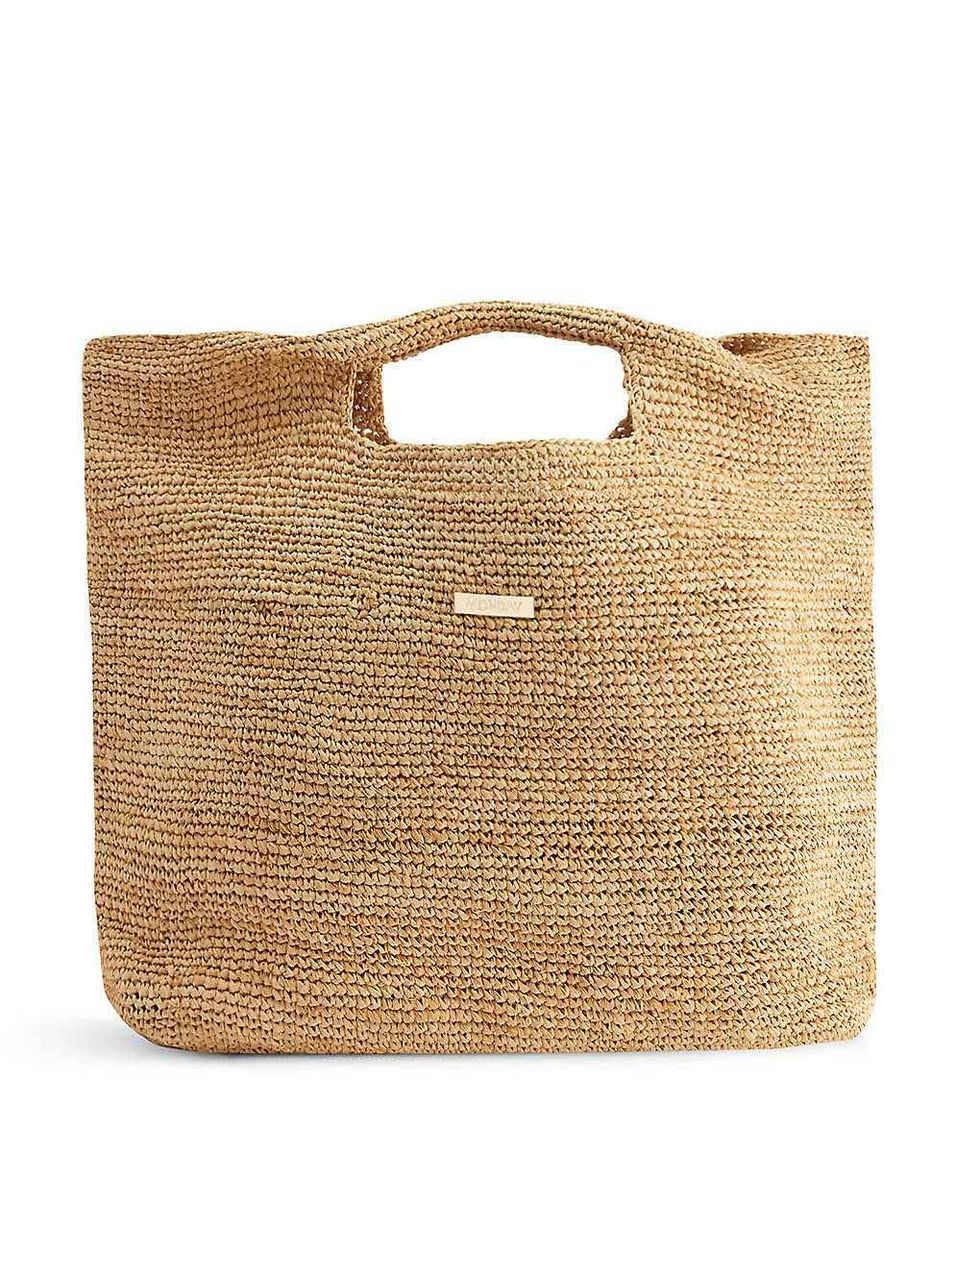 Luxury Designer Straw Tote Bag EC